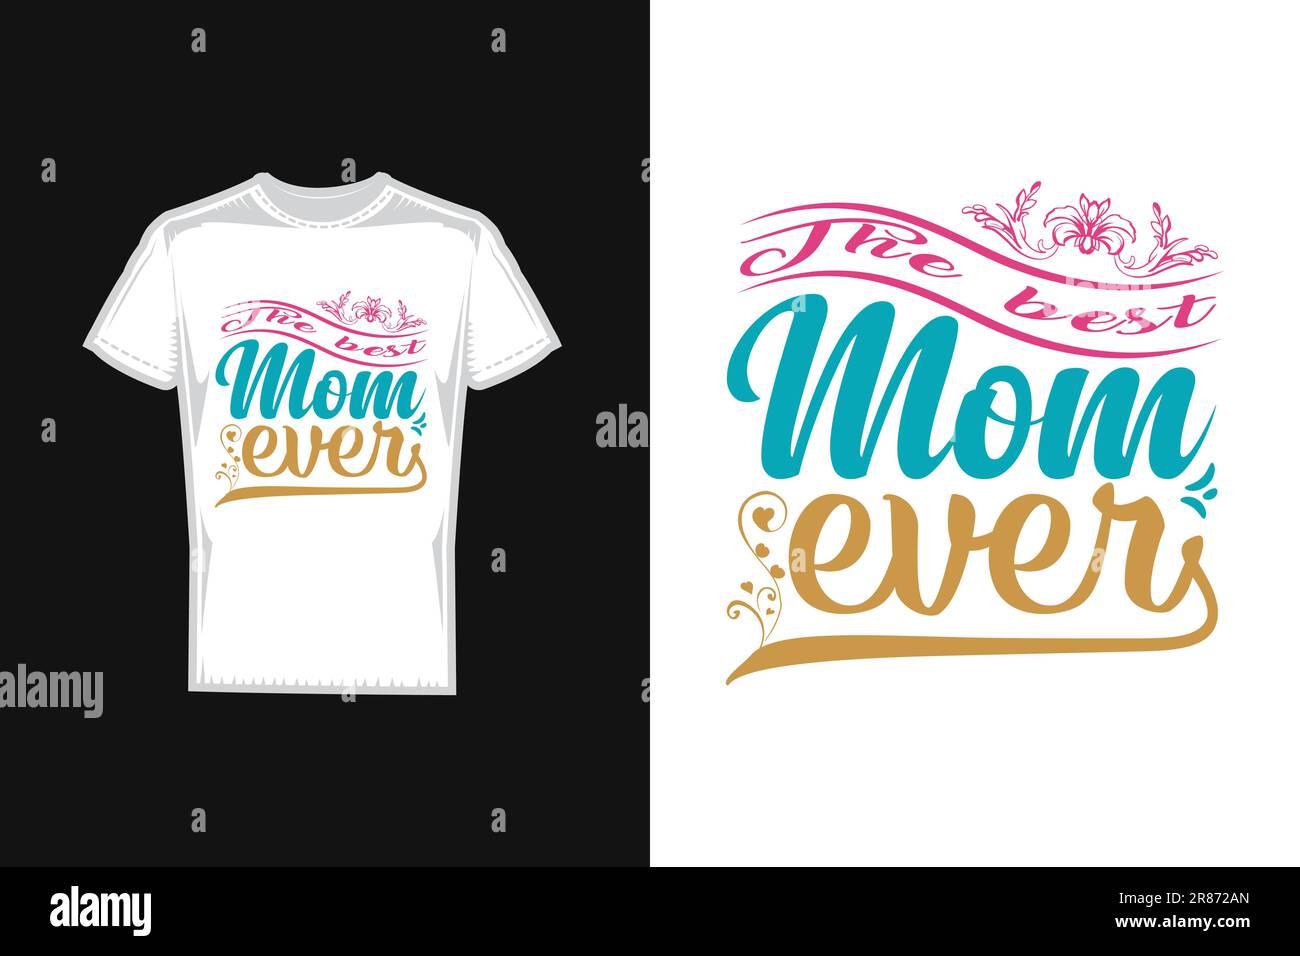 La migliore mamma di sempre cita il design tipografico della t-shirt per la festa della mamma, il design della t-shirt della mamma. Illustrazione Vettoriale